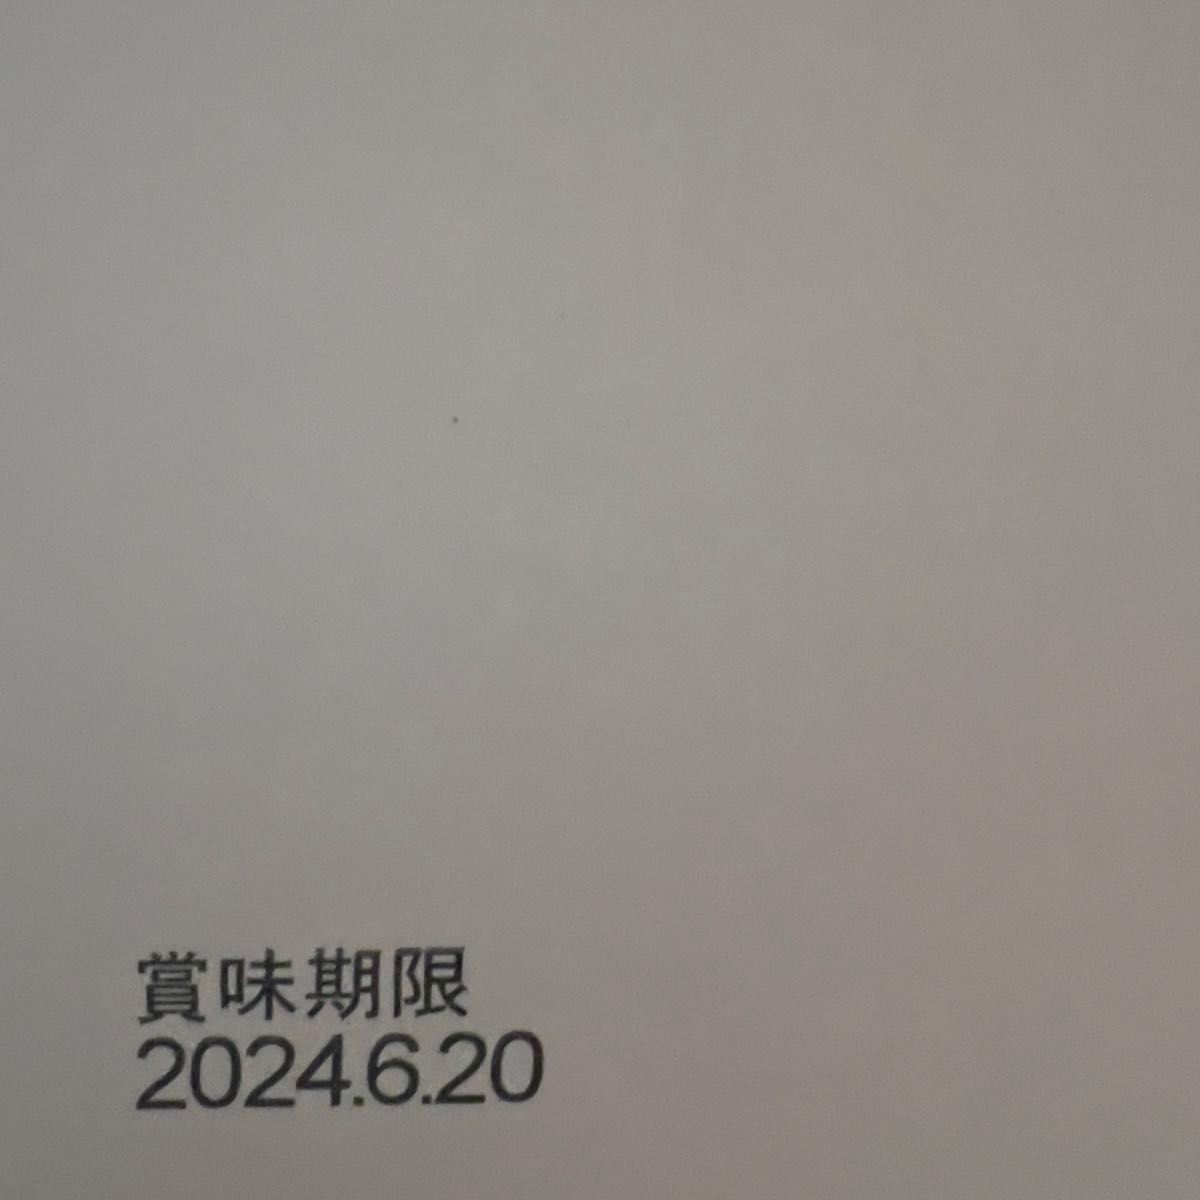 【新品未開封】ヒトツブカンロ グミッツェル プチパーティBOX 1箱